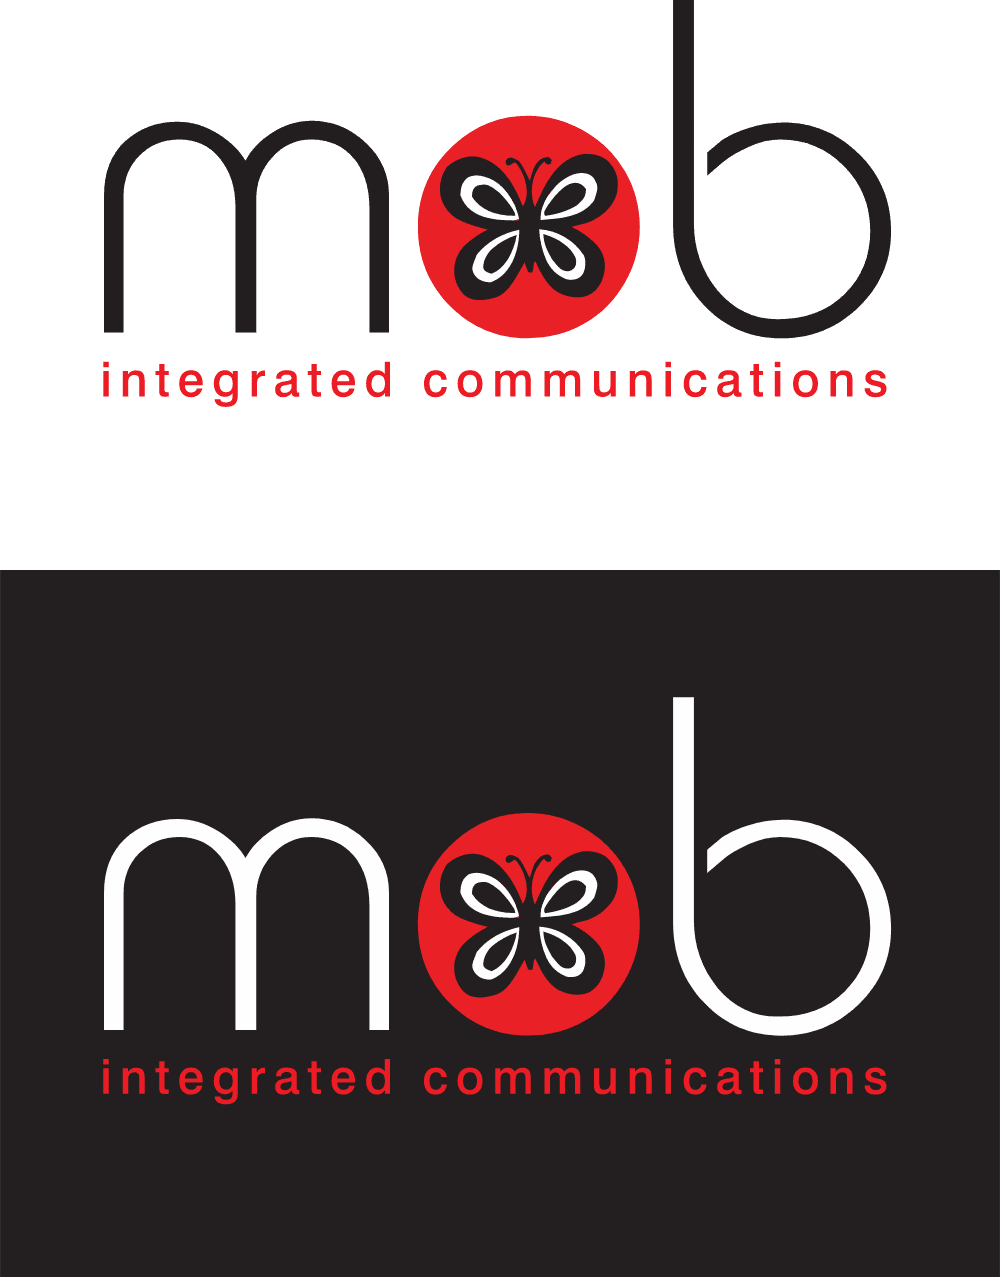 metrobeyond integrated communication Logo download